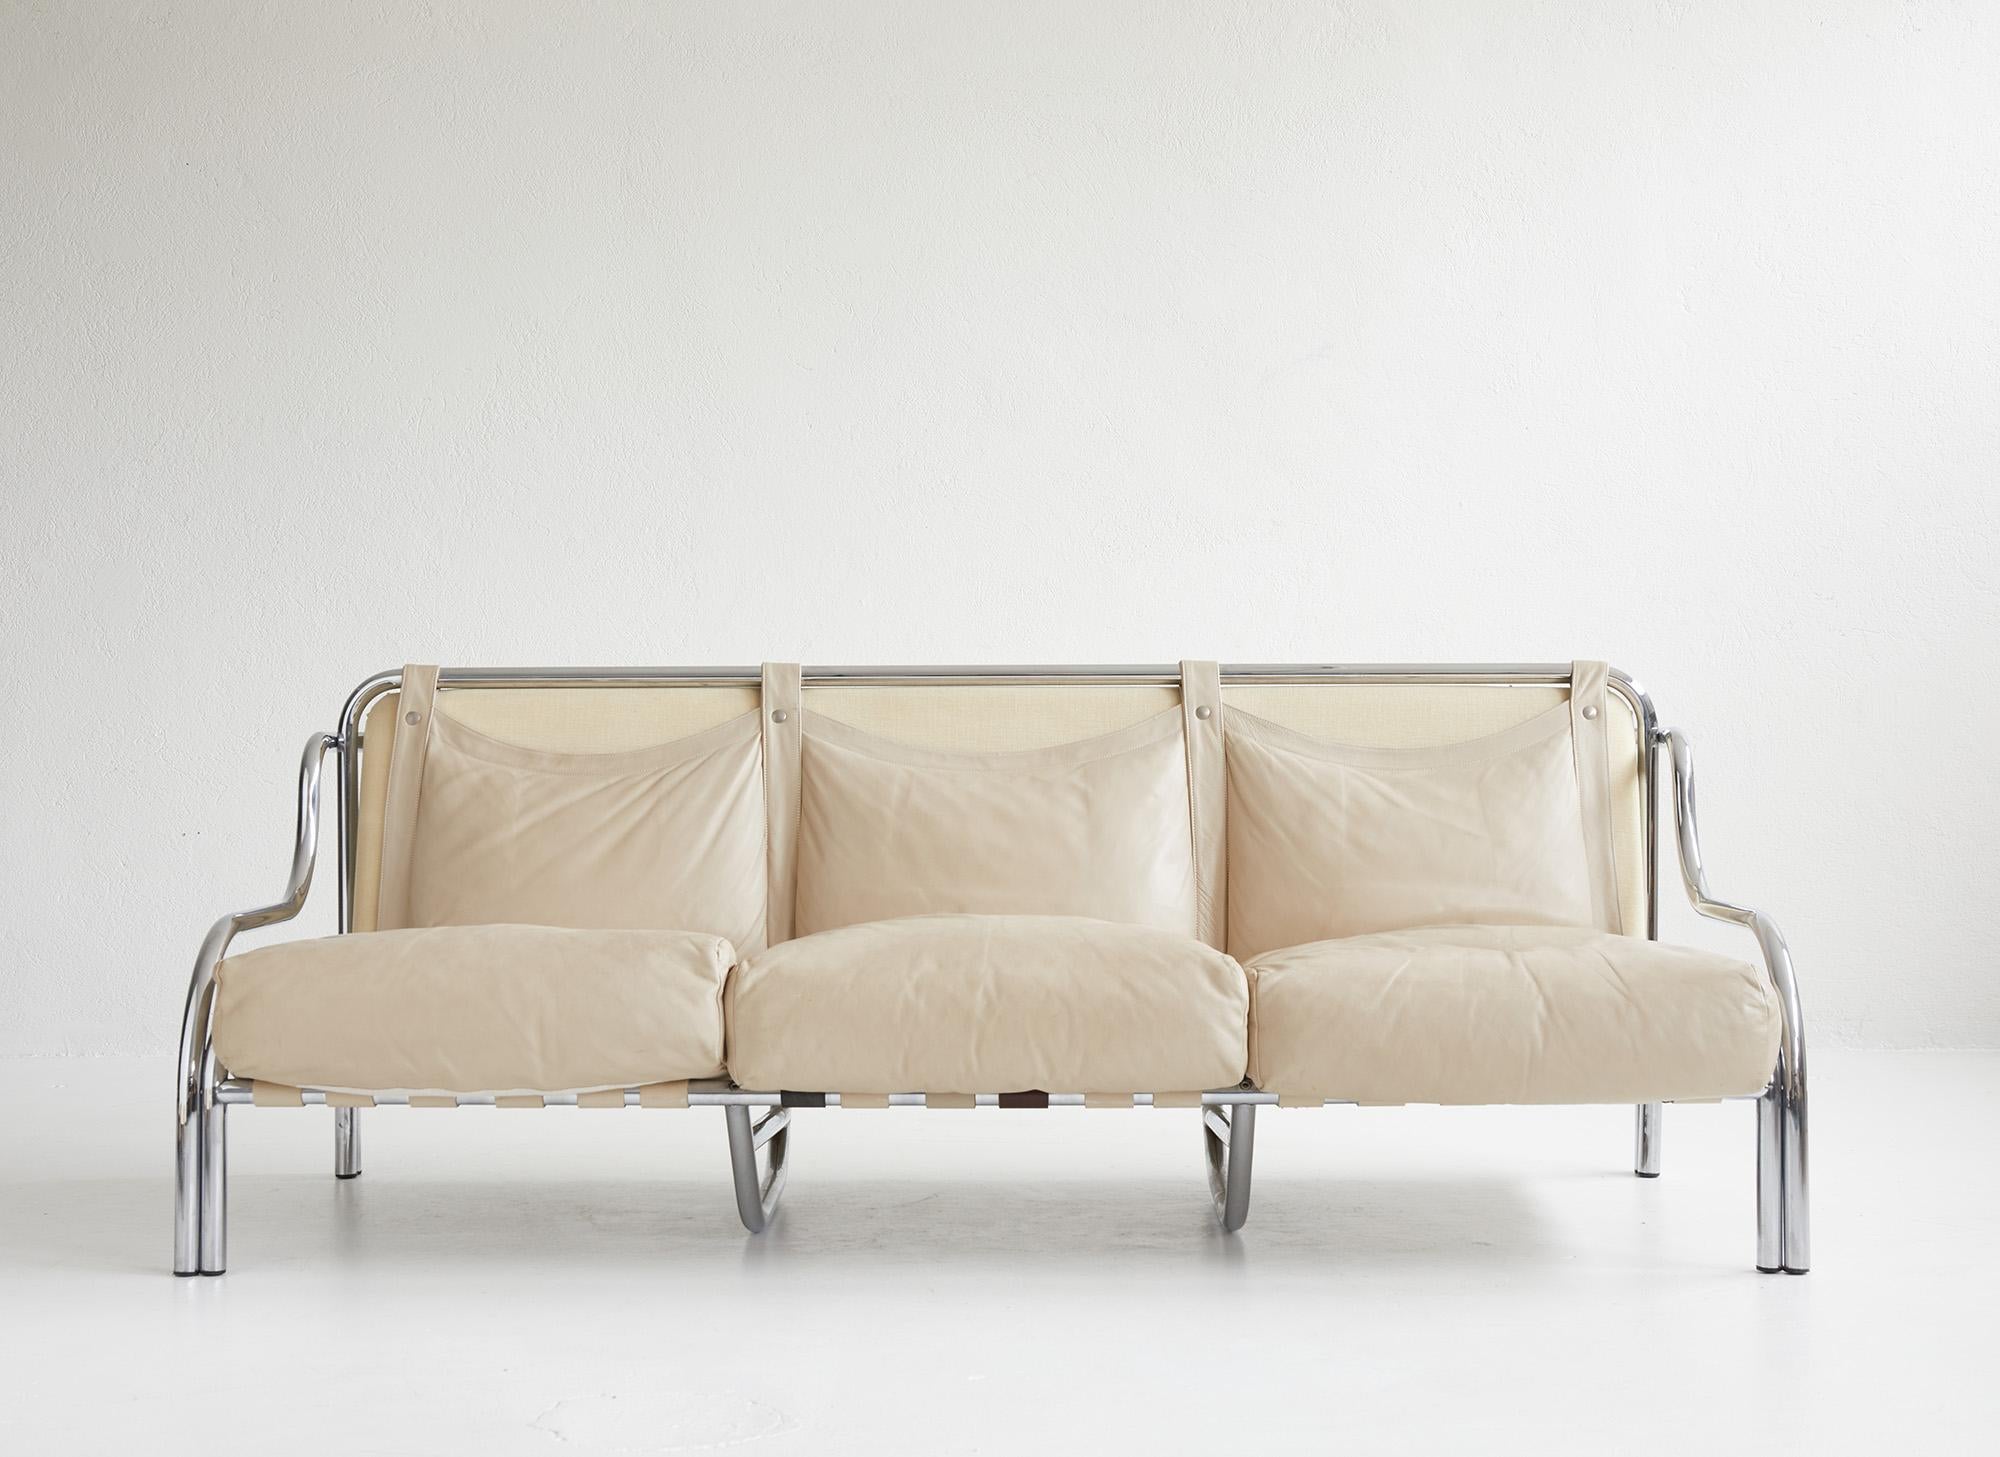 Dreisitziges Leders Sofa „Stringa“ von Gae Aulenti für Poltronova, Italien 1962 (Moderne der Mitte des Jahrhunderts) im Angebot